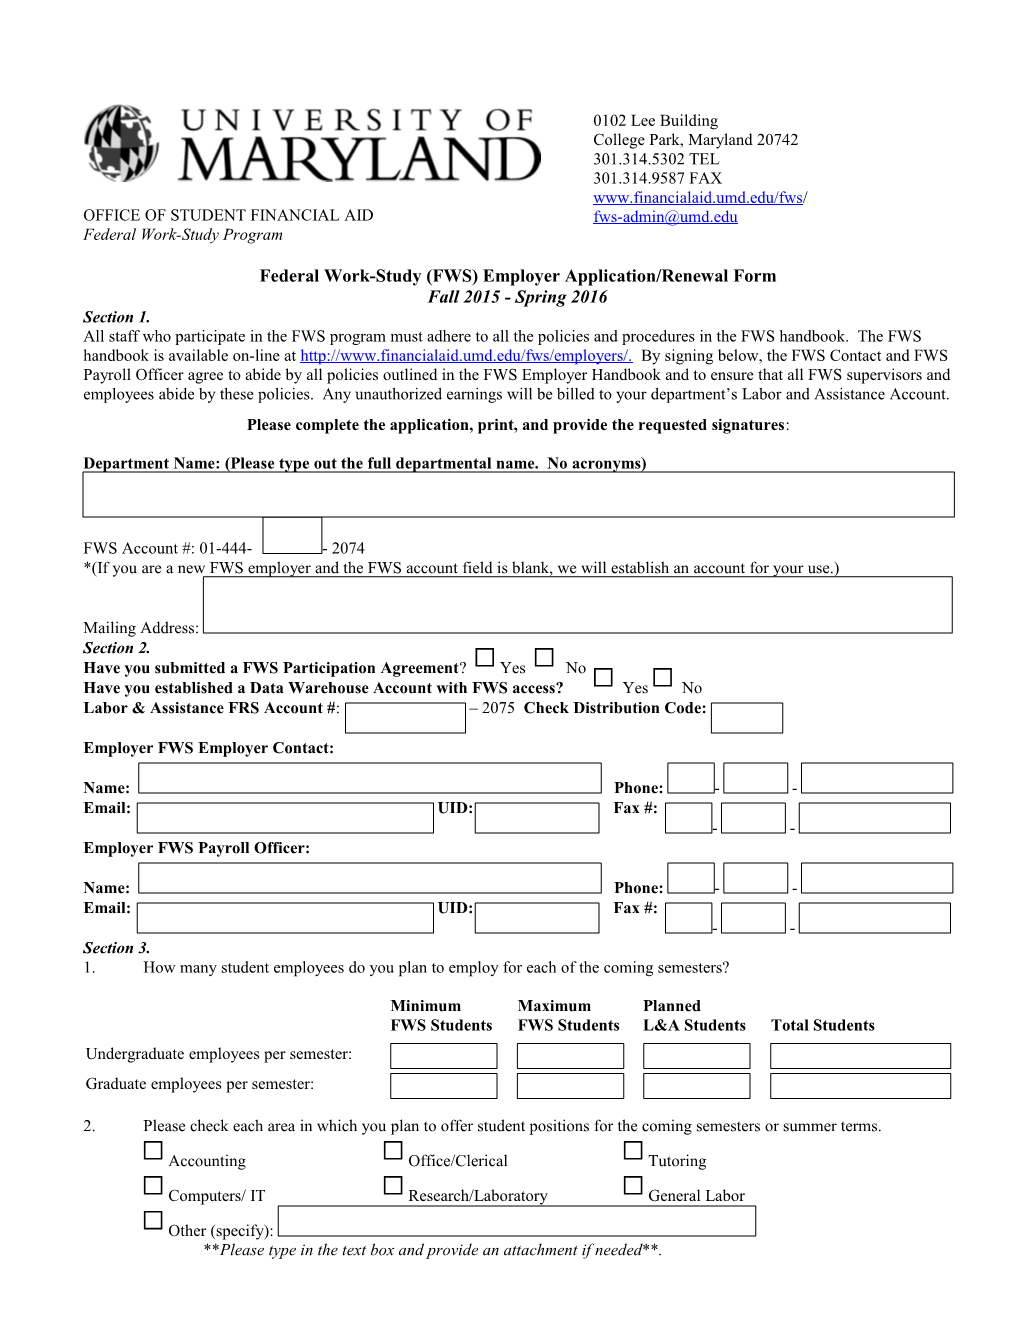 Federal Work-Study (FWS) Employer Application/Renewal Form